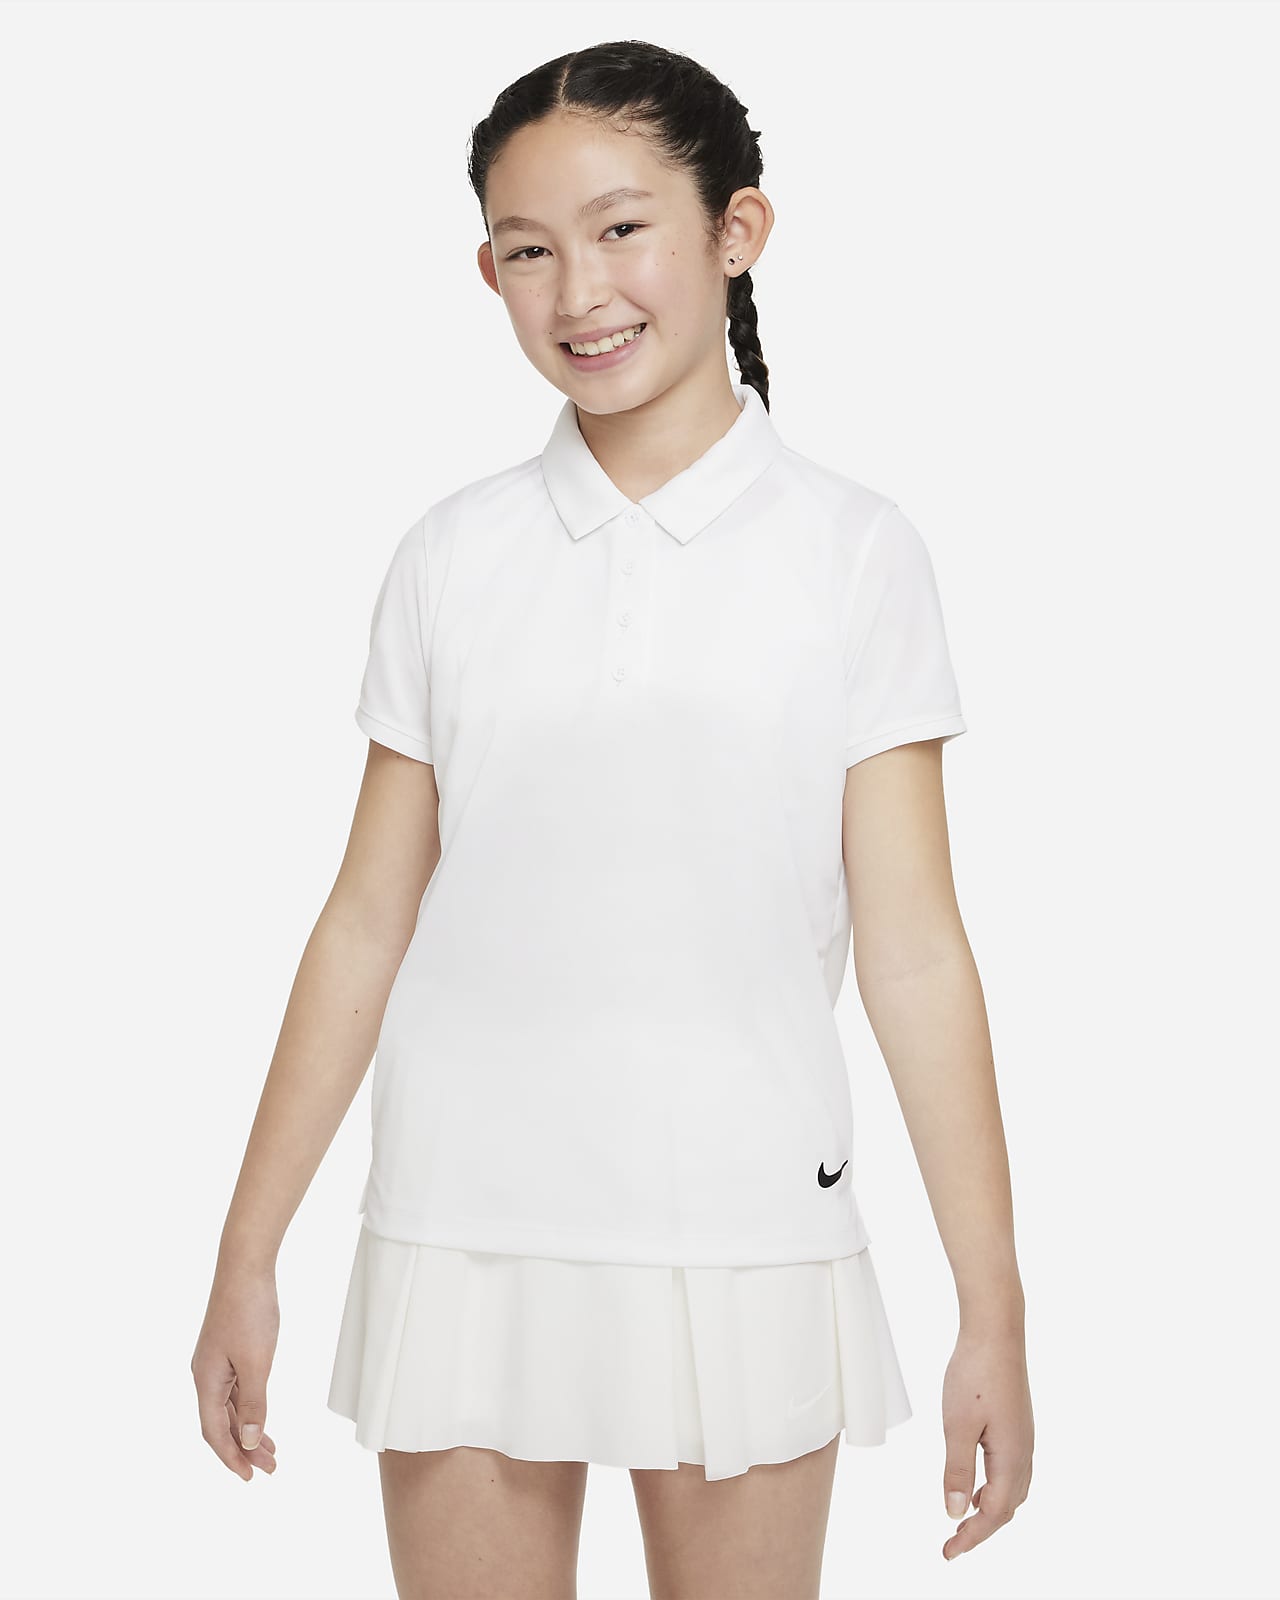 เสื้อโปโลกอล์ฟเด็กโต Nike Dri-FIT Victory (หญิง)